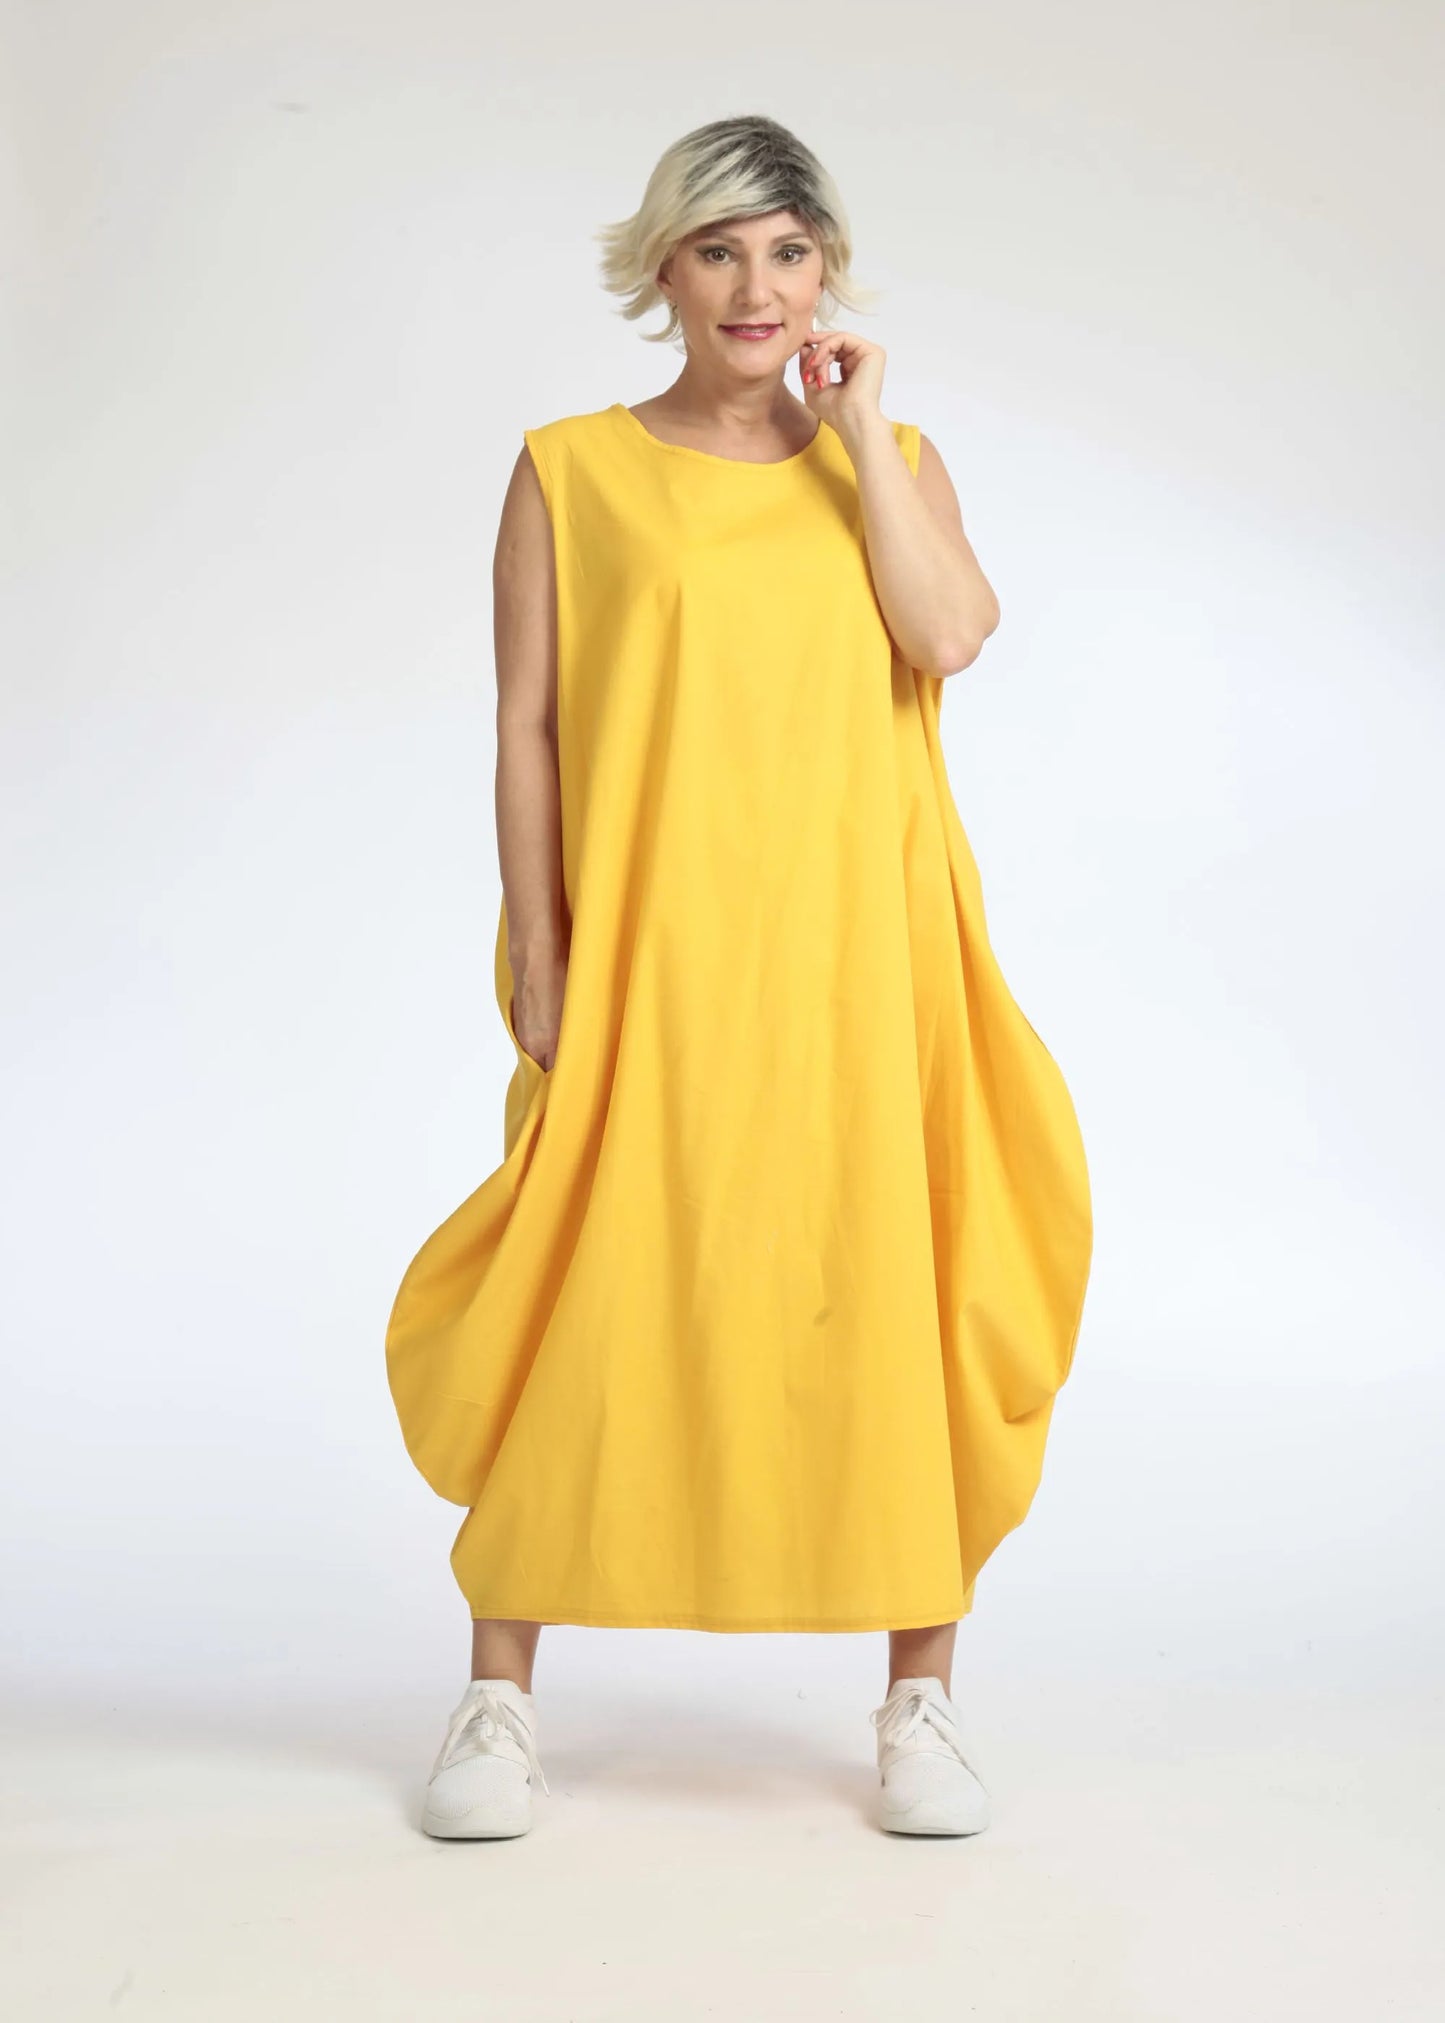 Sommer Kleid in Ballon Form aus glatter Popeline Qualität, Hazel in Gelb